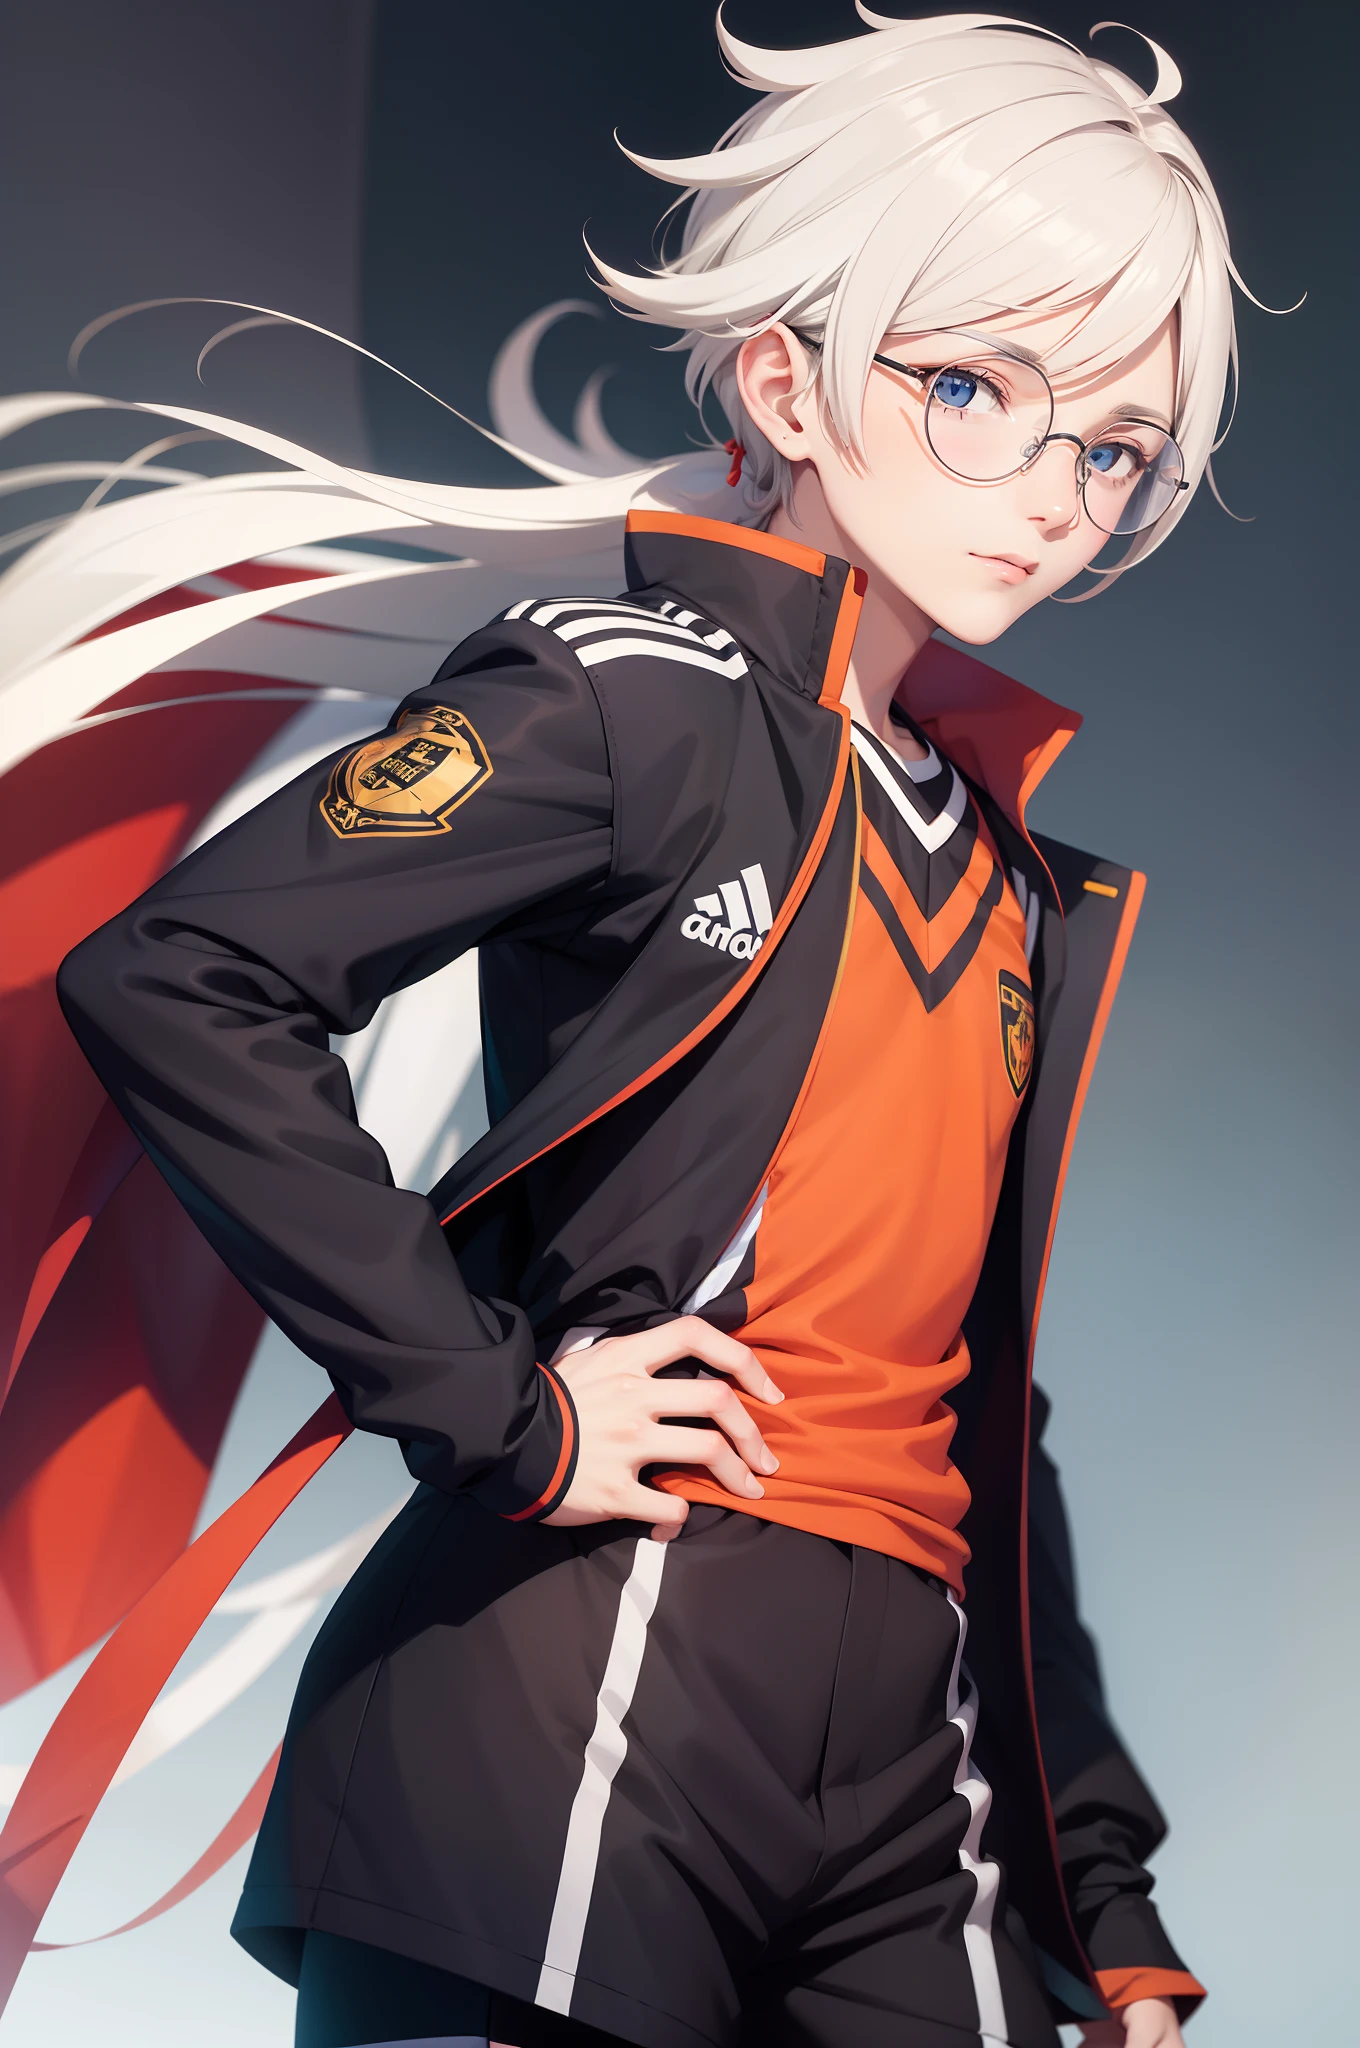 Ren Amamiya Persona,anime boy,soccer uniform, glasses